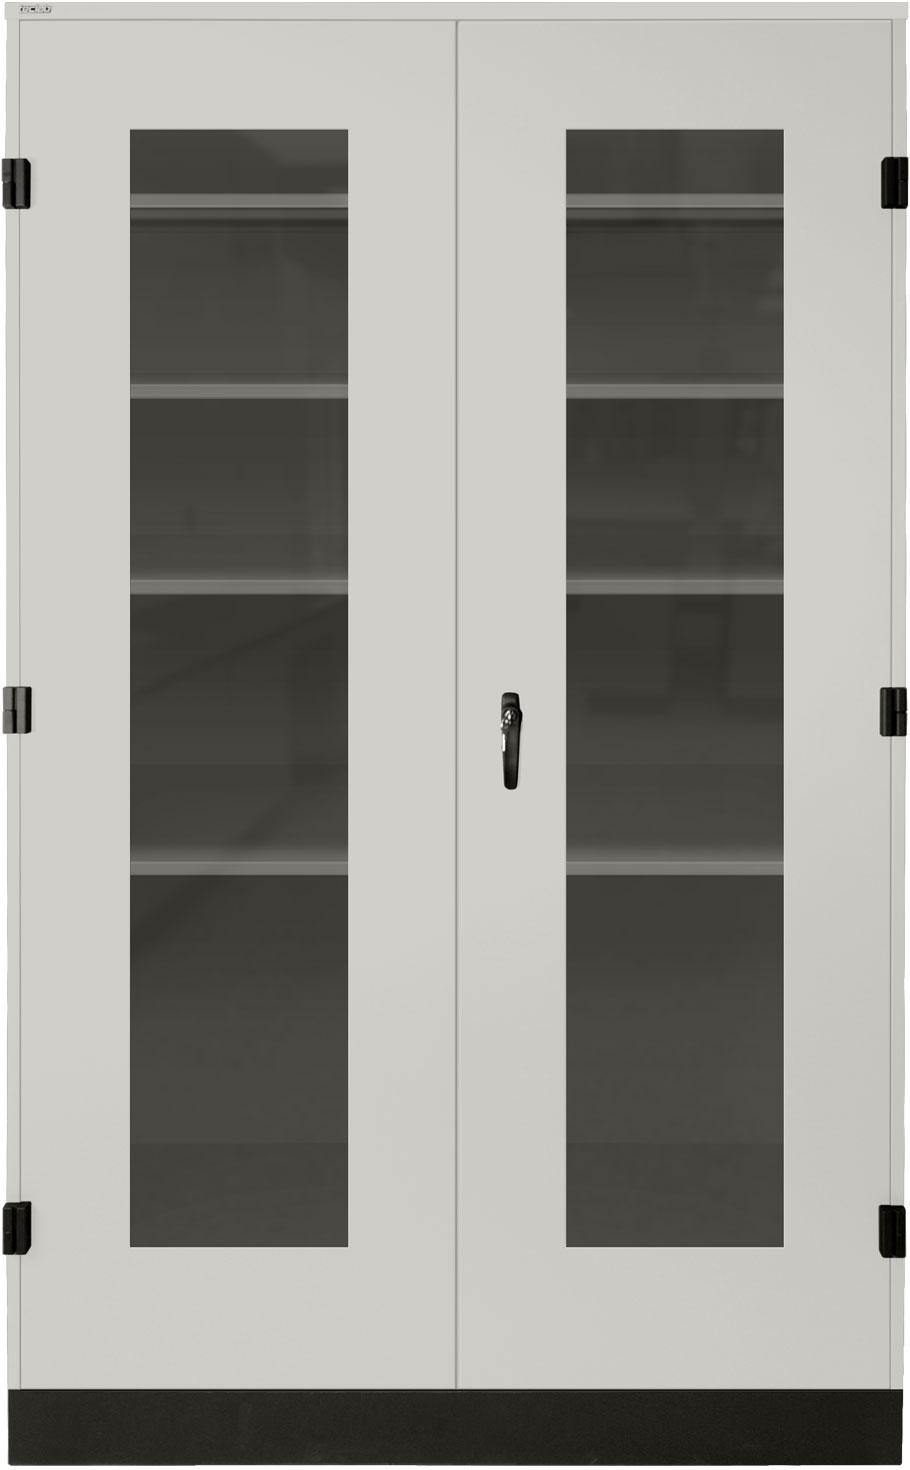 Teclab Tall Storage Cabinets